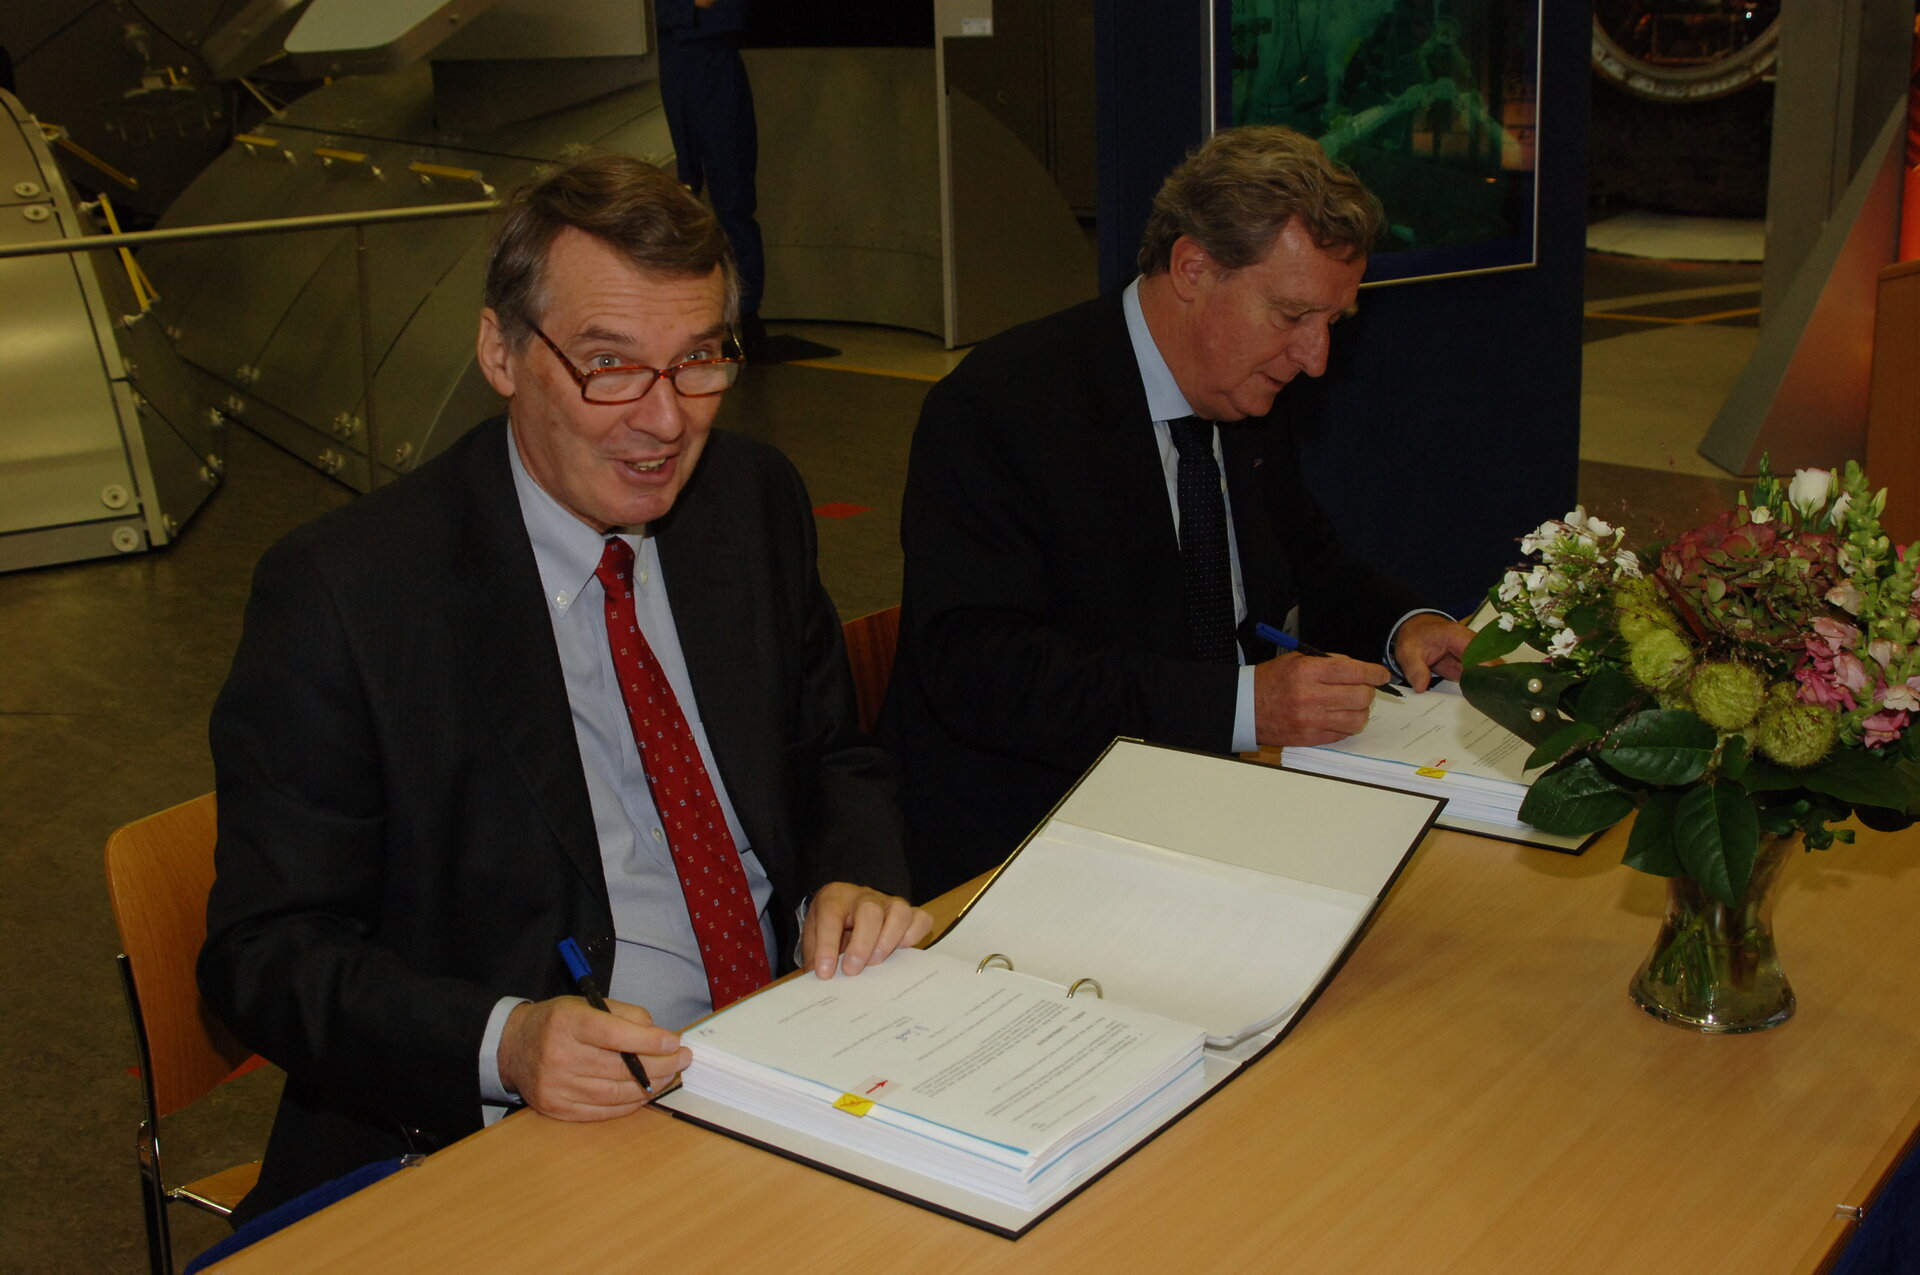 De ondertekening van het contract door ESA's Daniel Sacotte en Ben Spee van Dutch Space